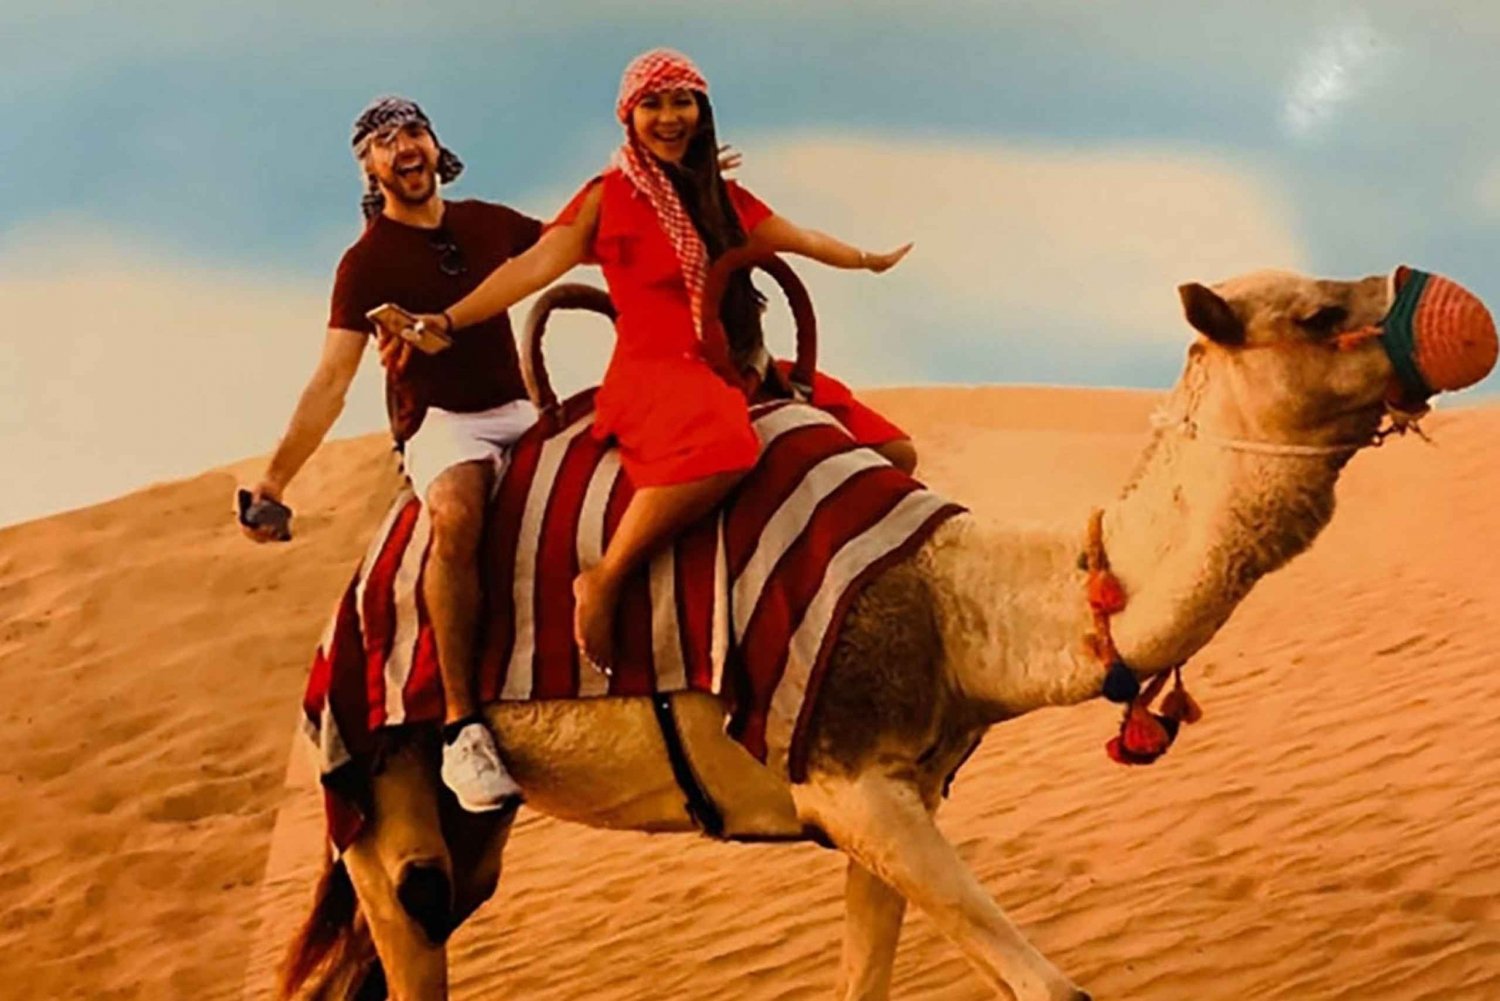 Røde klitter, quad-cykling, kameltrekking og autentisk grillmad